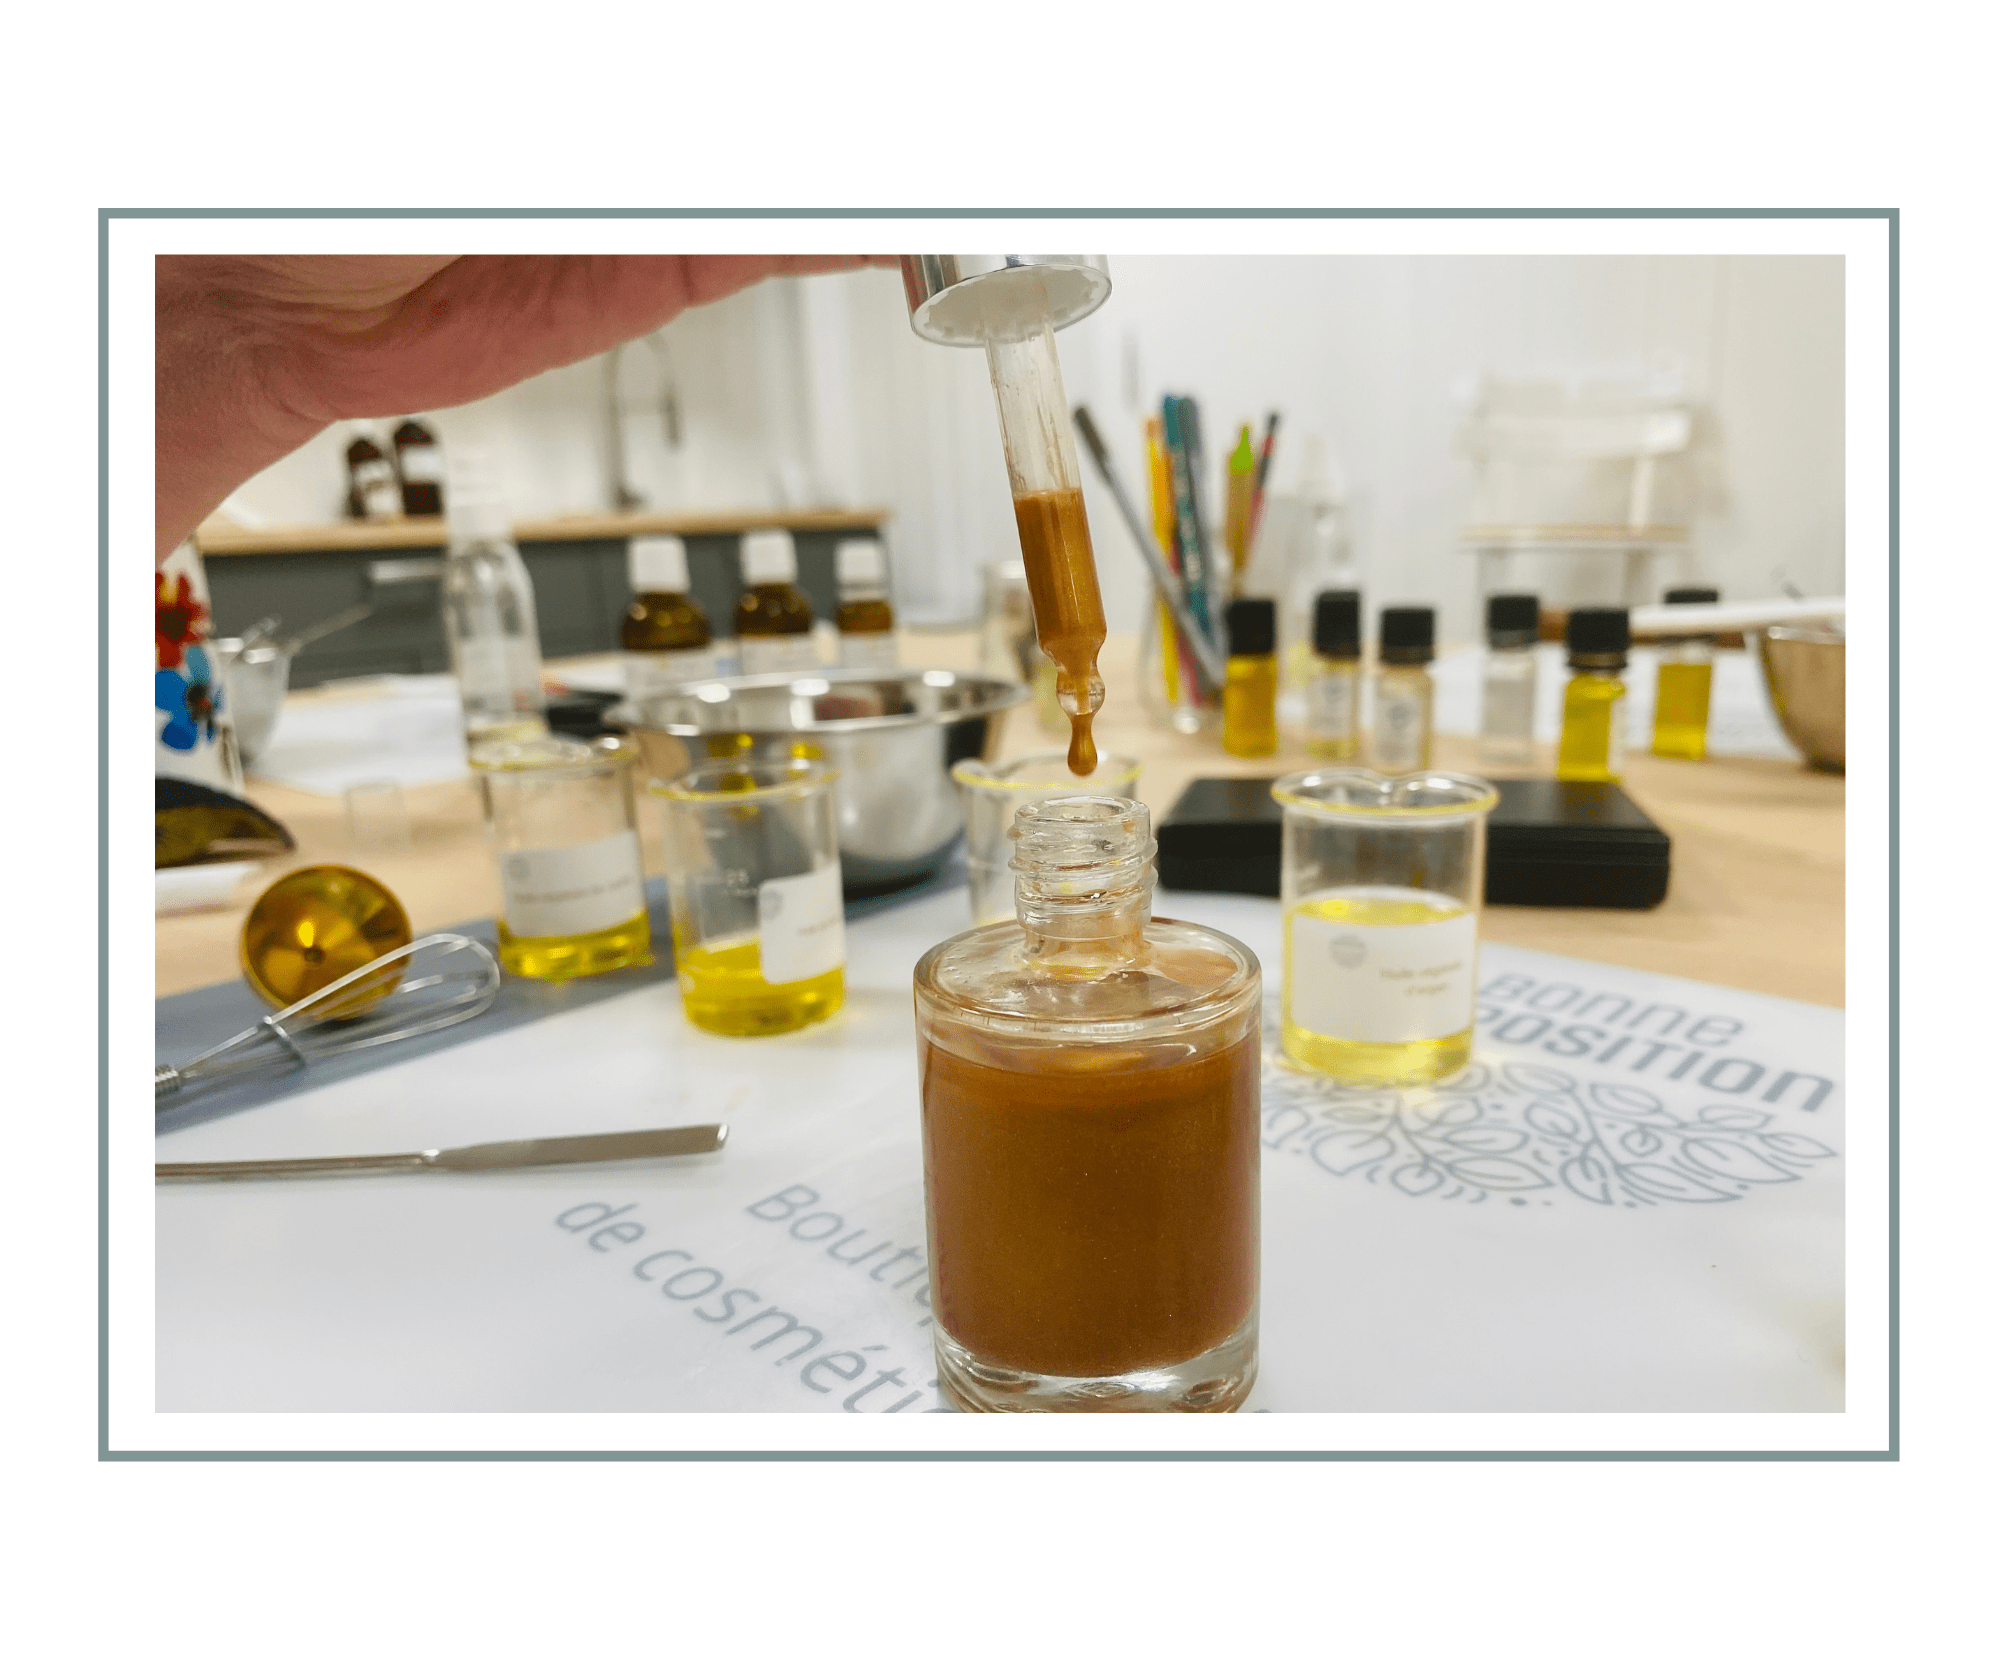 Atelier huile merveilleuse – 1 heure